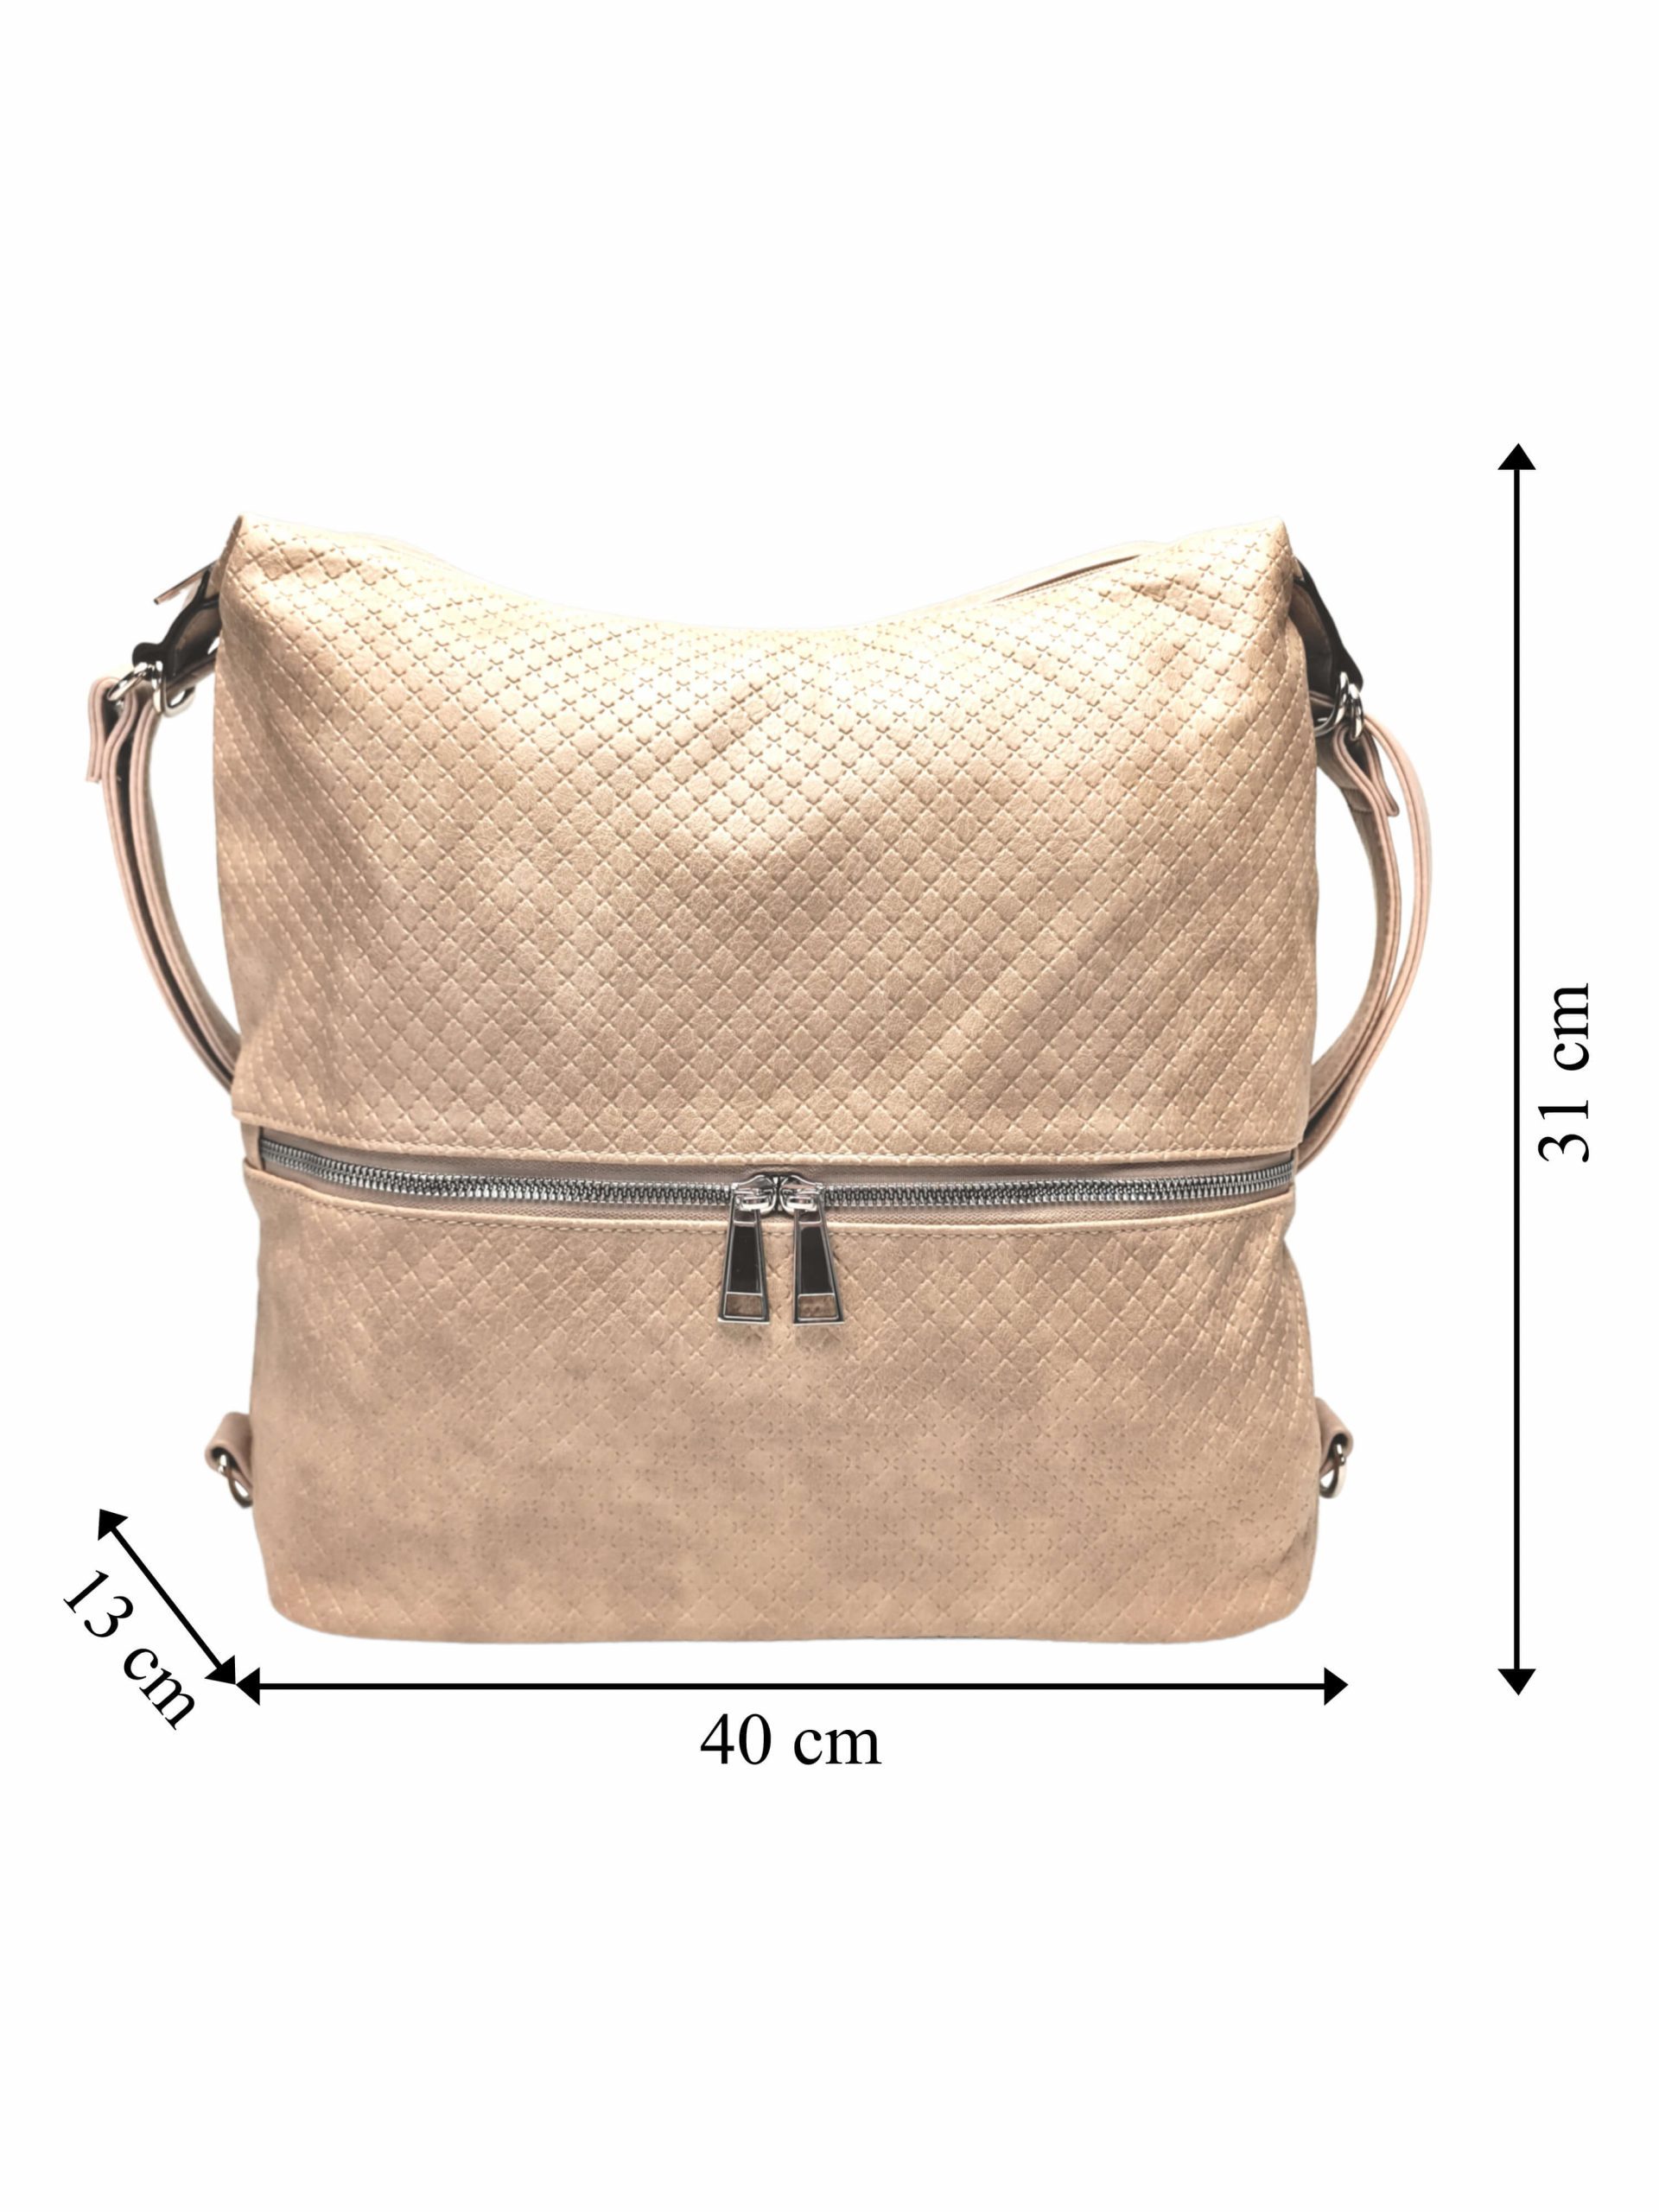 Velký světle hnědý kabelko-batoh 2v1 s praktickou kapsou, Tapple, H190010N+, přední strana kabelko-batohu 2v1 s rozměry